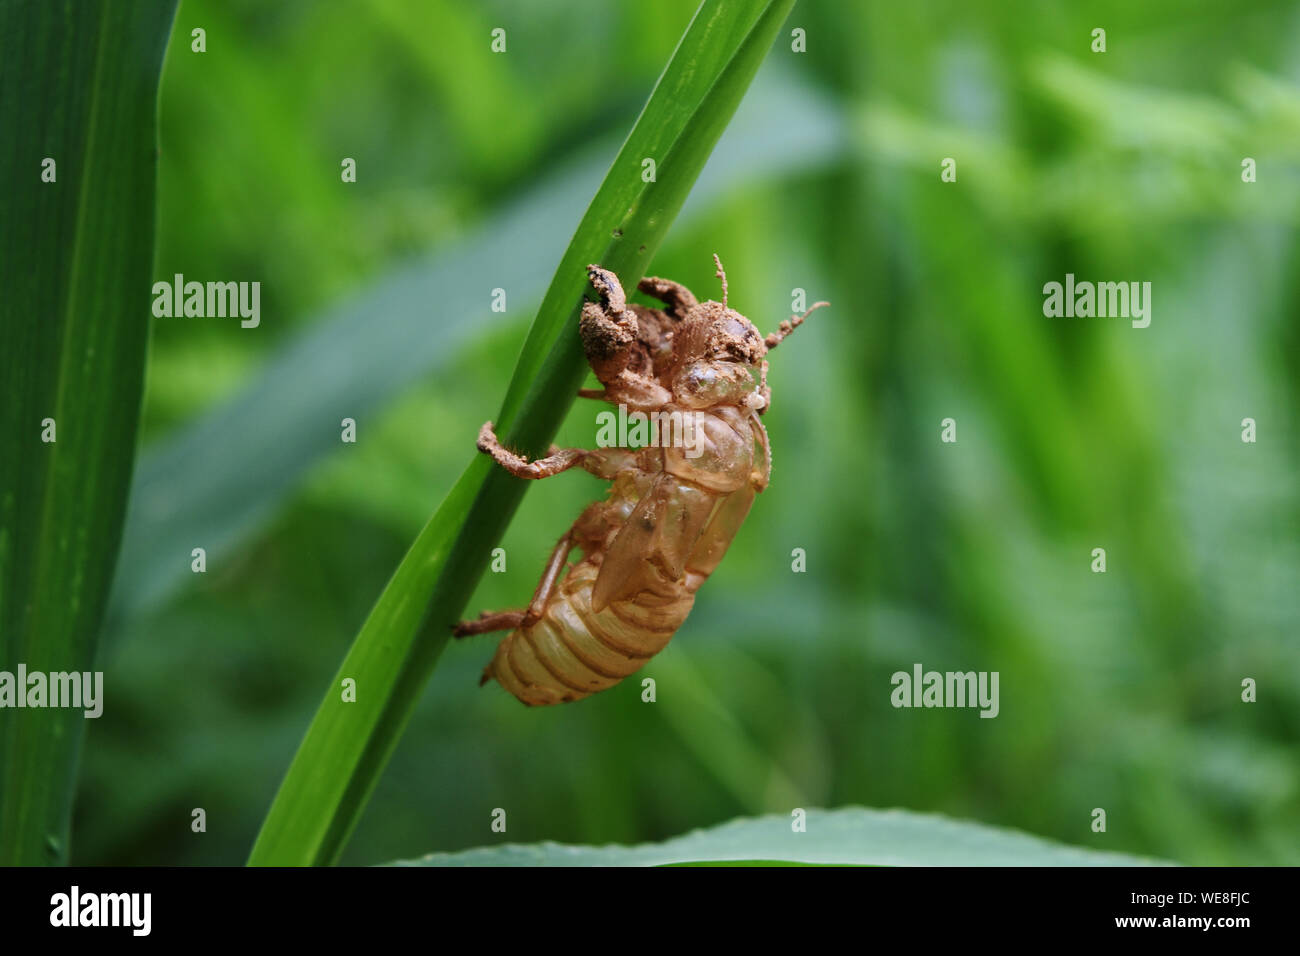 Cigale de peel la mue avec fond vert naturel , insecte Larve vide shell sur la feuille d'herbe Banque D'Images